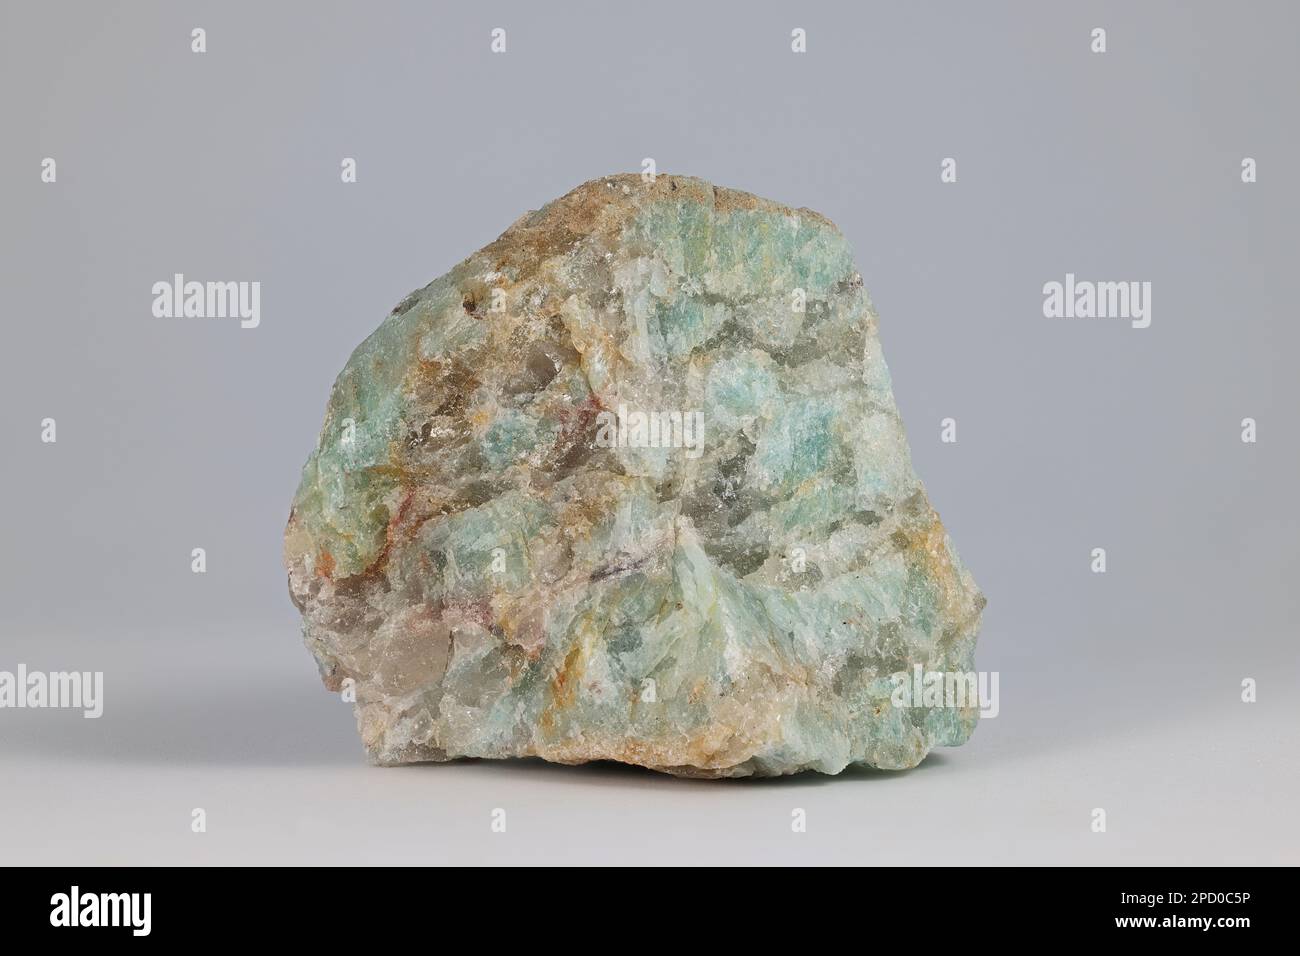 Pietra verde giada immagini e fotografie stock ad alta risoluzione - Alamy